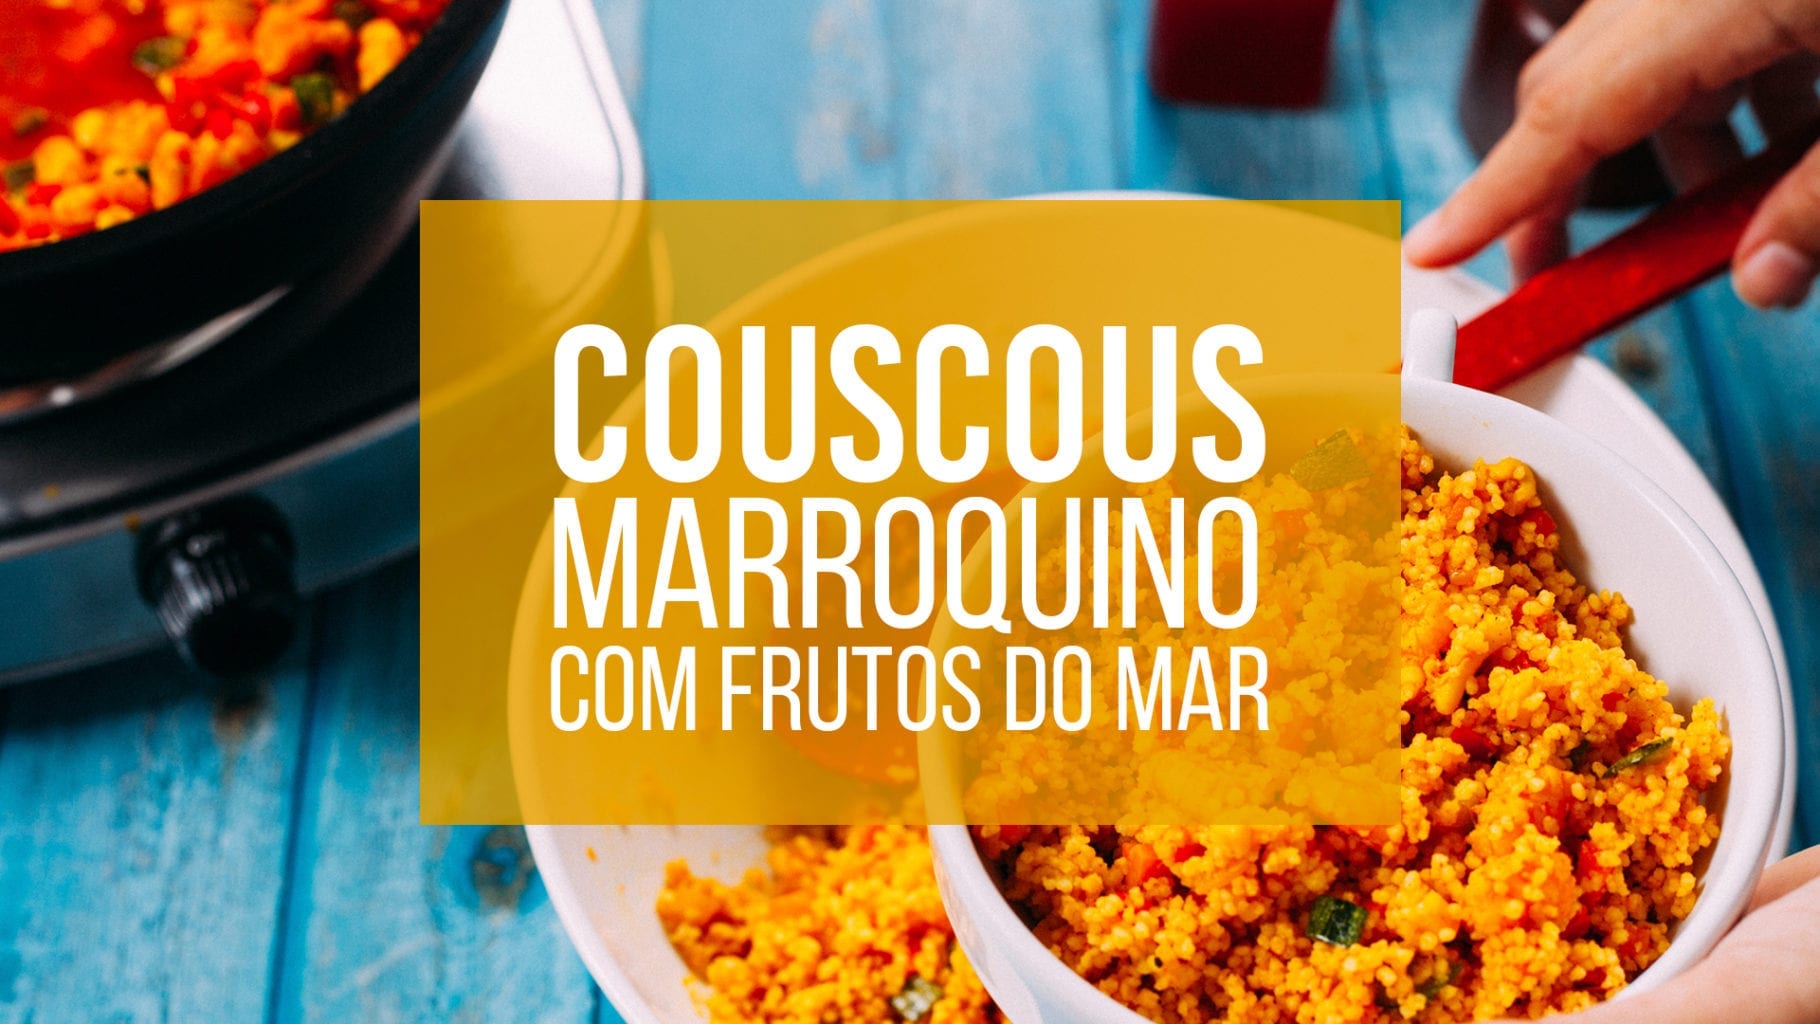 Couscous marroquino com frutos do mar